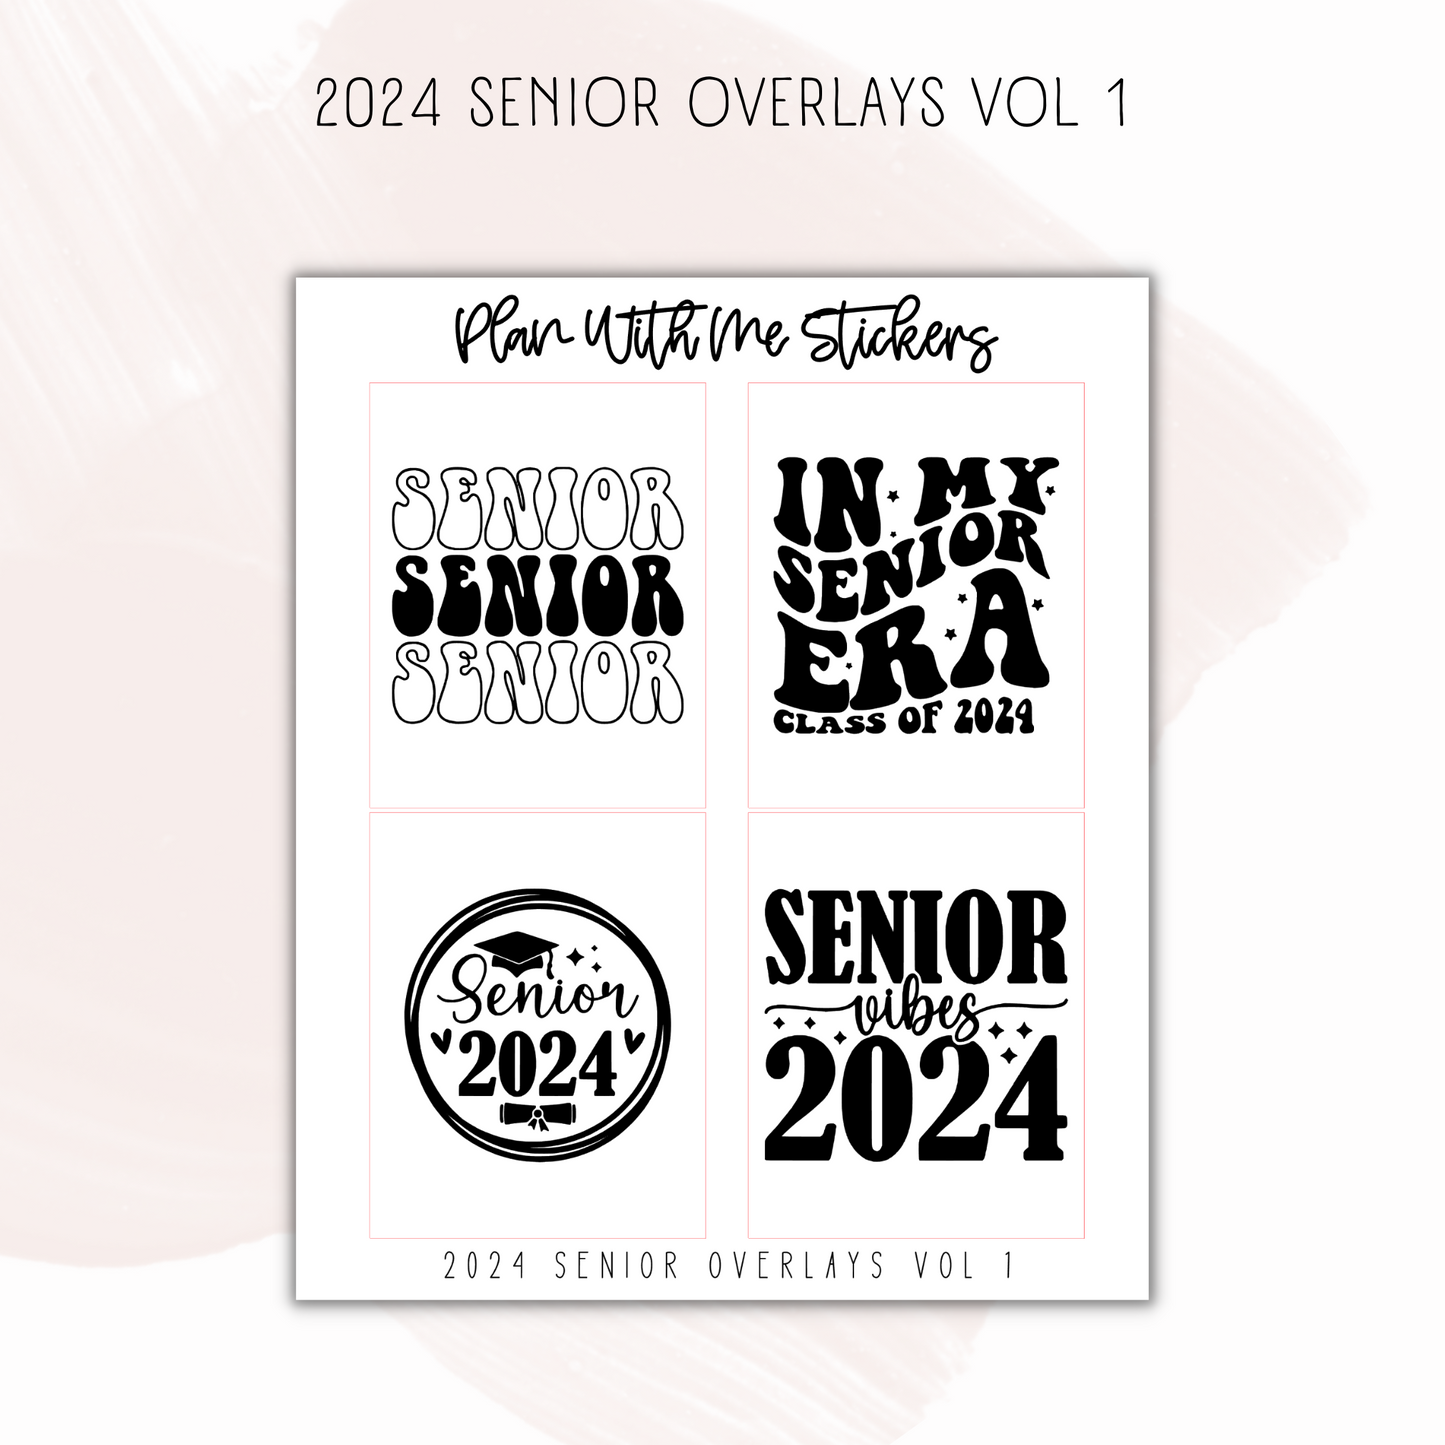 2024 Senior Overlays Vol 1